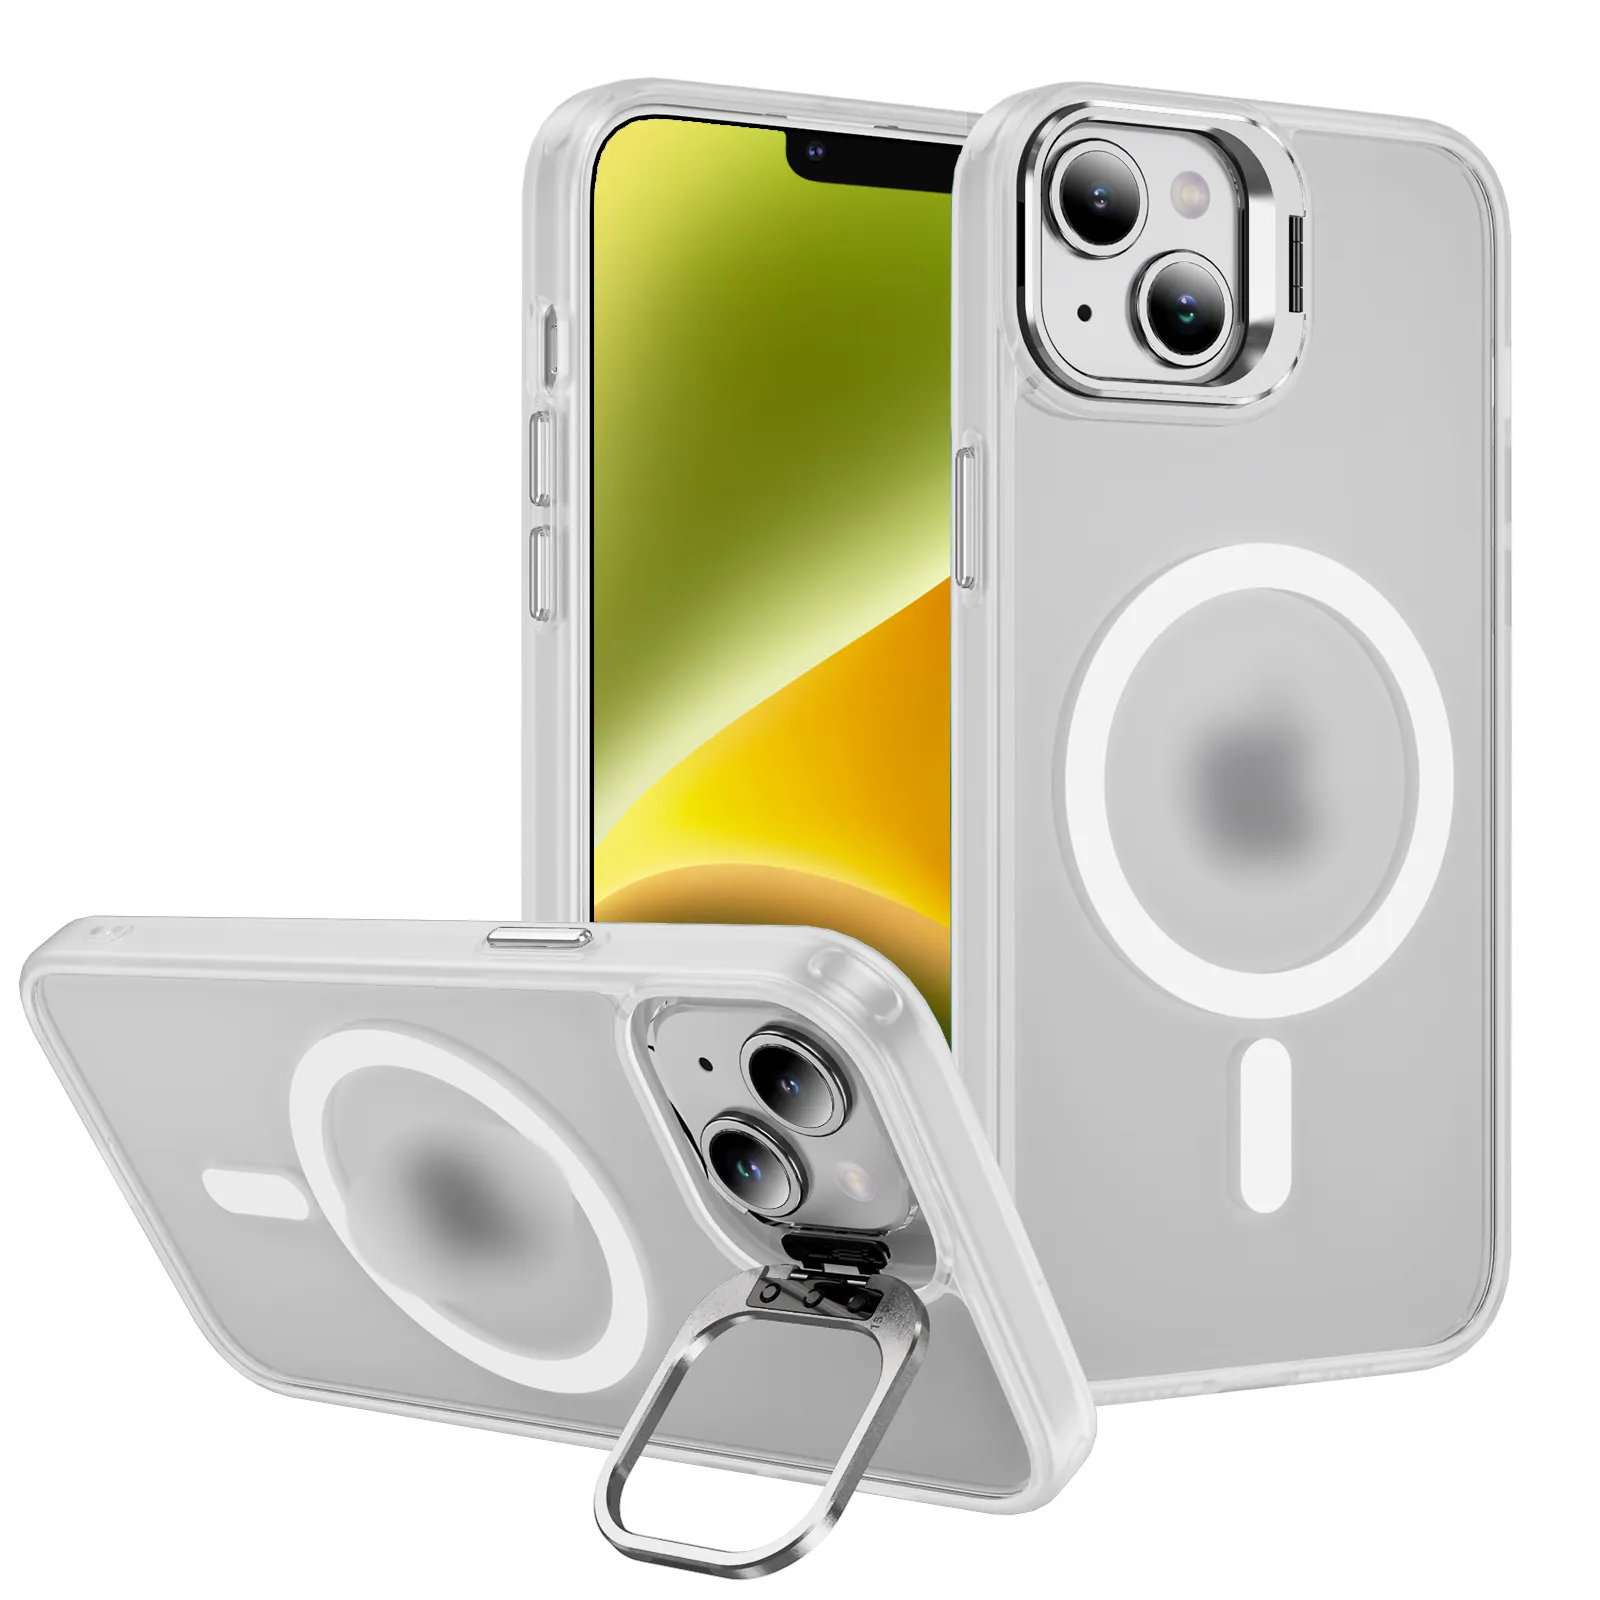 ユニバーサル耐衝撃性透明スキン-iPhone、Huawei、Samsung用のPC磁気電話ケースを感じる-Phone Shell Packaging Edition